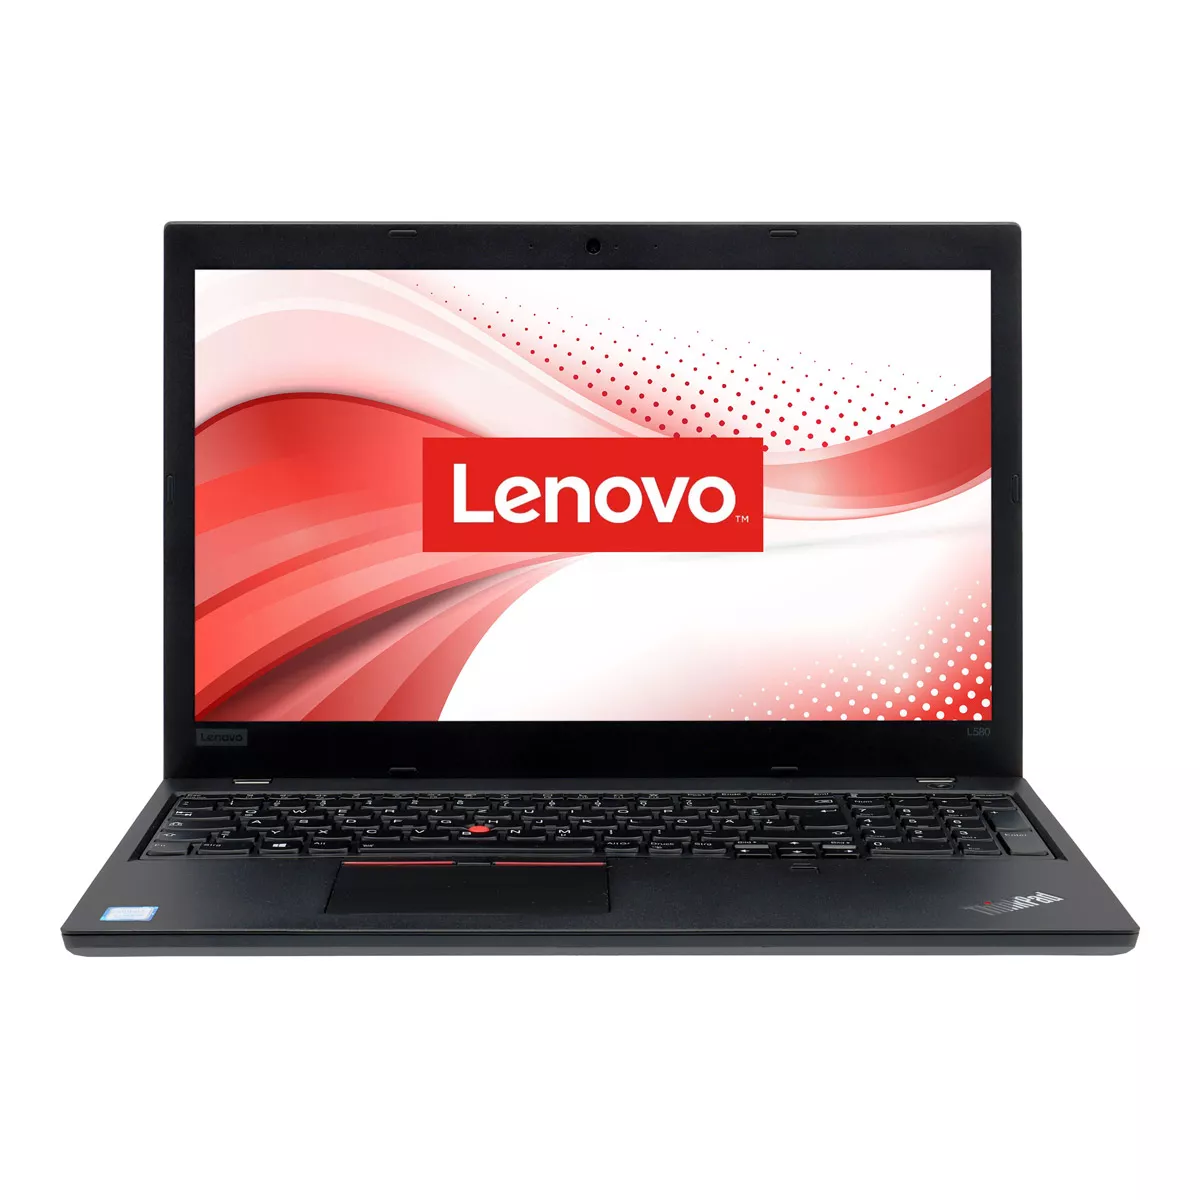 Lenovo ThinkPad L590 Core i5 8365U 8 GB 240 GB M.2 nVME SSD Webcam A+